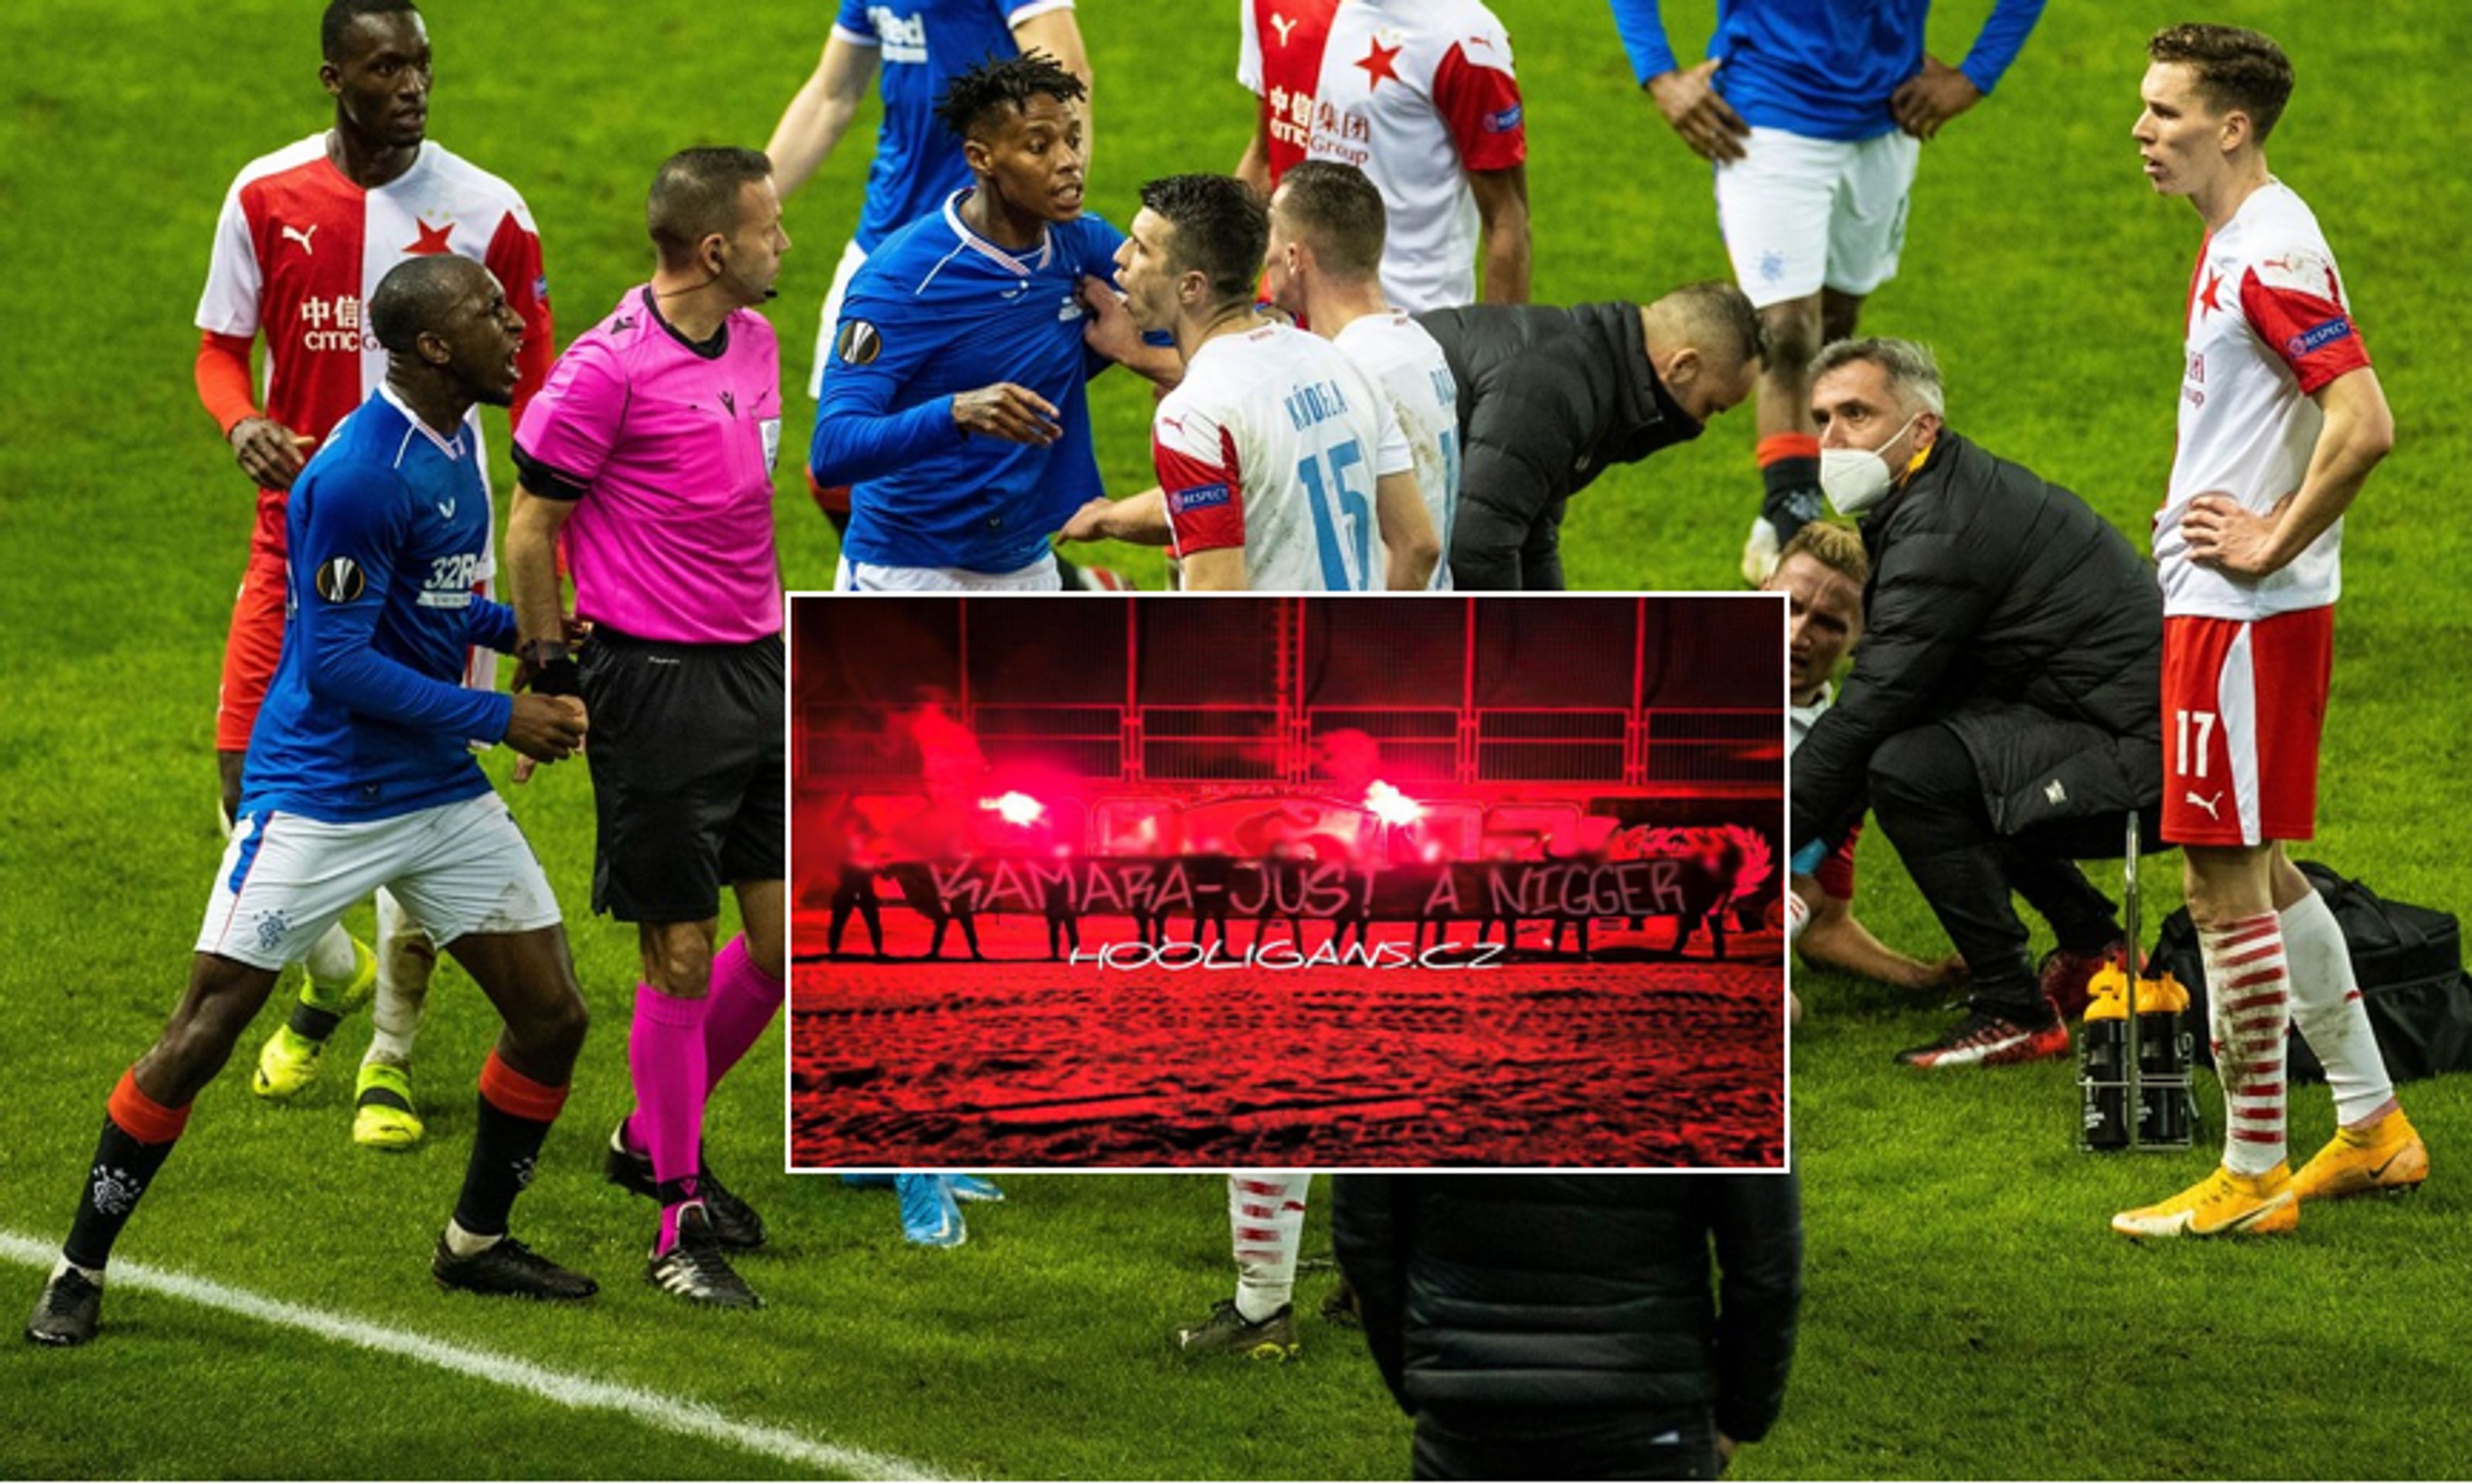 Vyhrocený zápas Evropské ligy a fotka slávistických hooligans - Policie zahájila vyšetřování. Hledá fanoušky Slavie, kteří uráželi Kamaru (1/1)